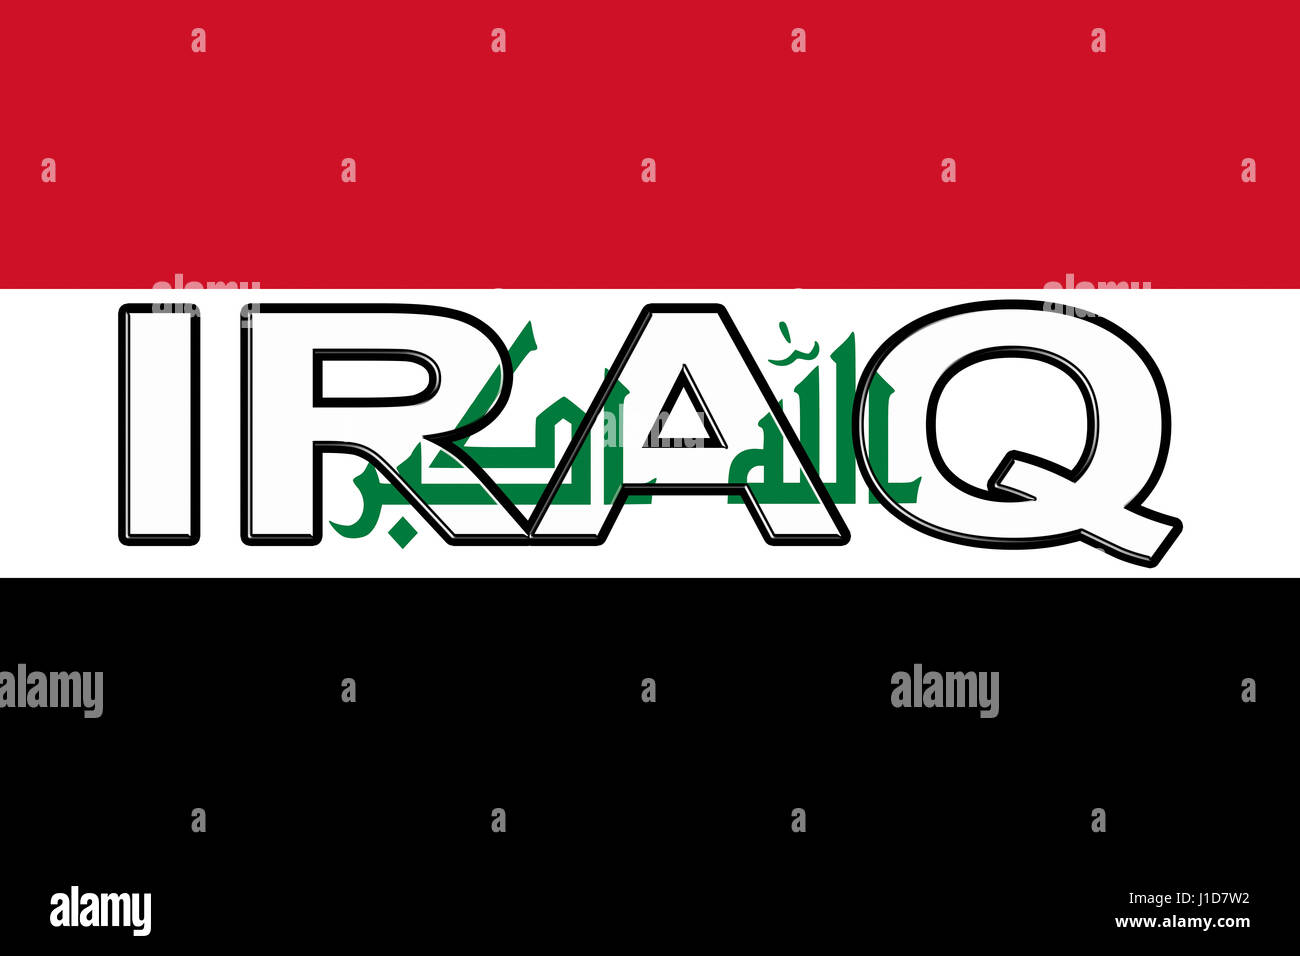 Abbildung der Flagge des Irak mit dem Land auf die Fahne geschrieben. Stockfoto